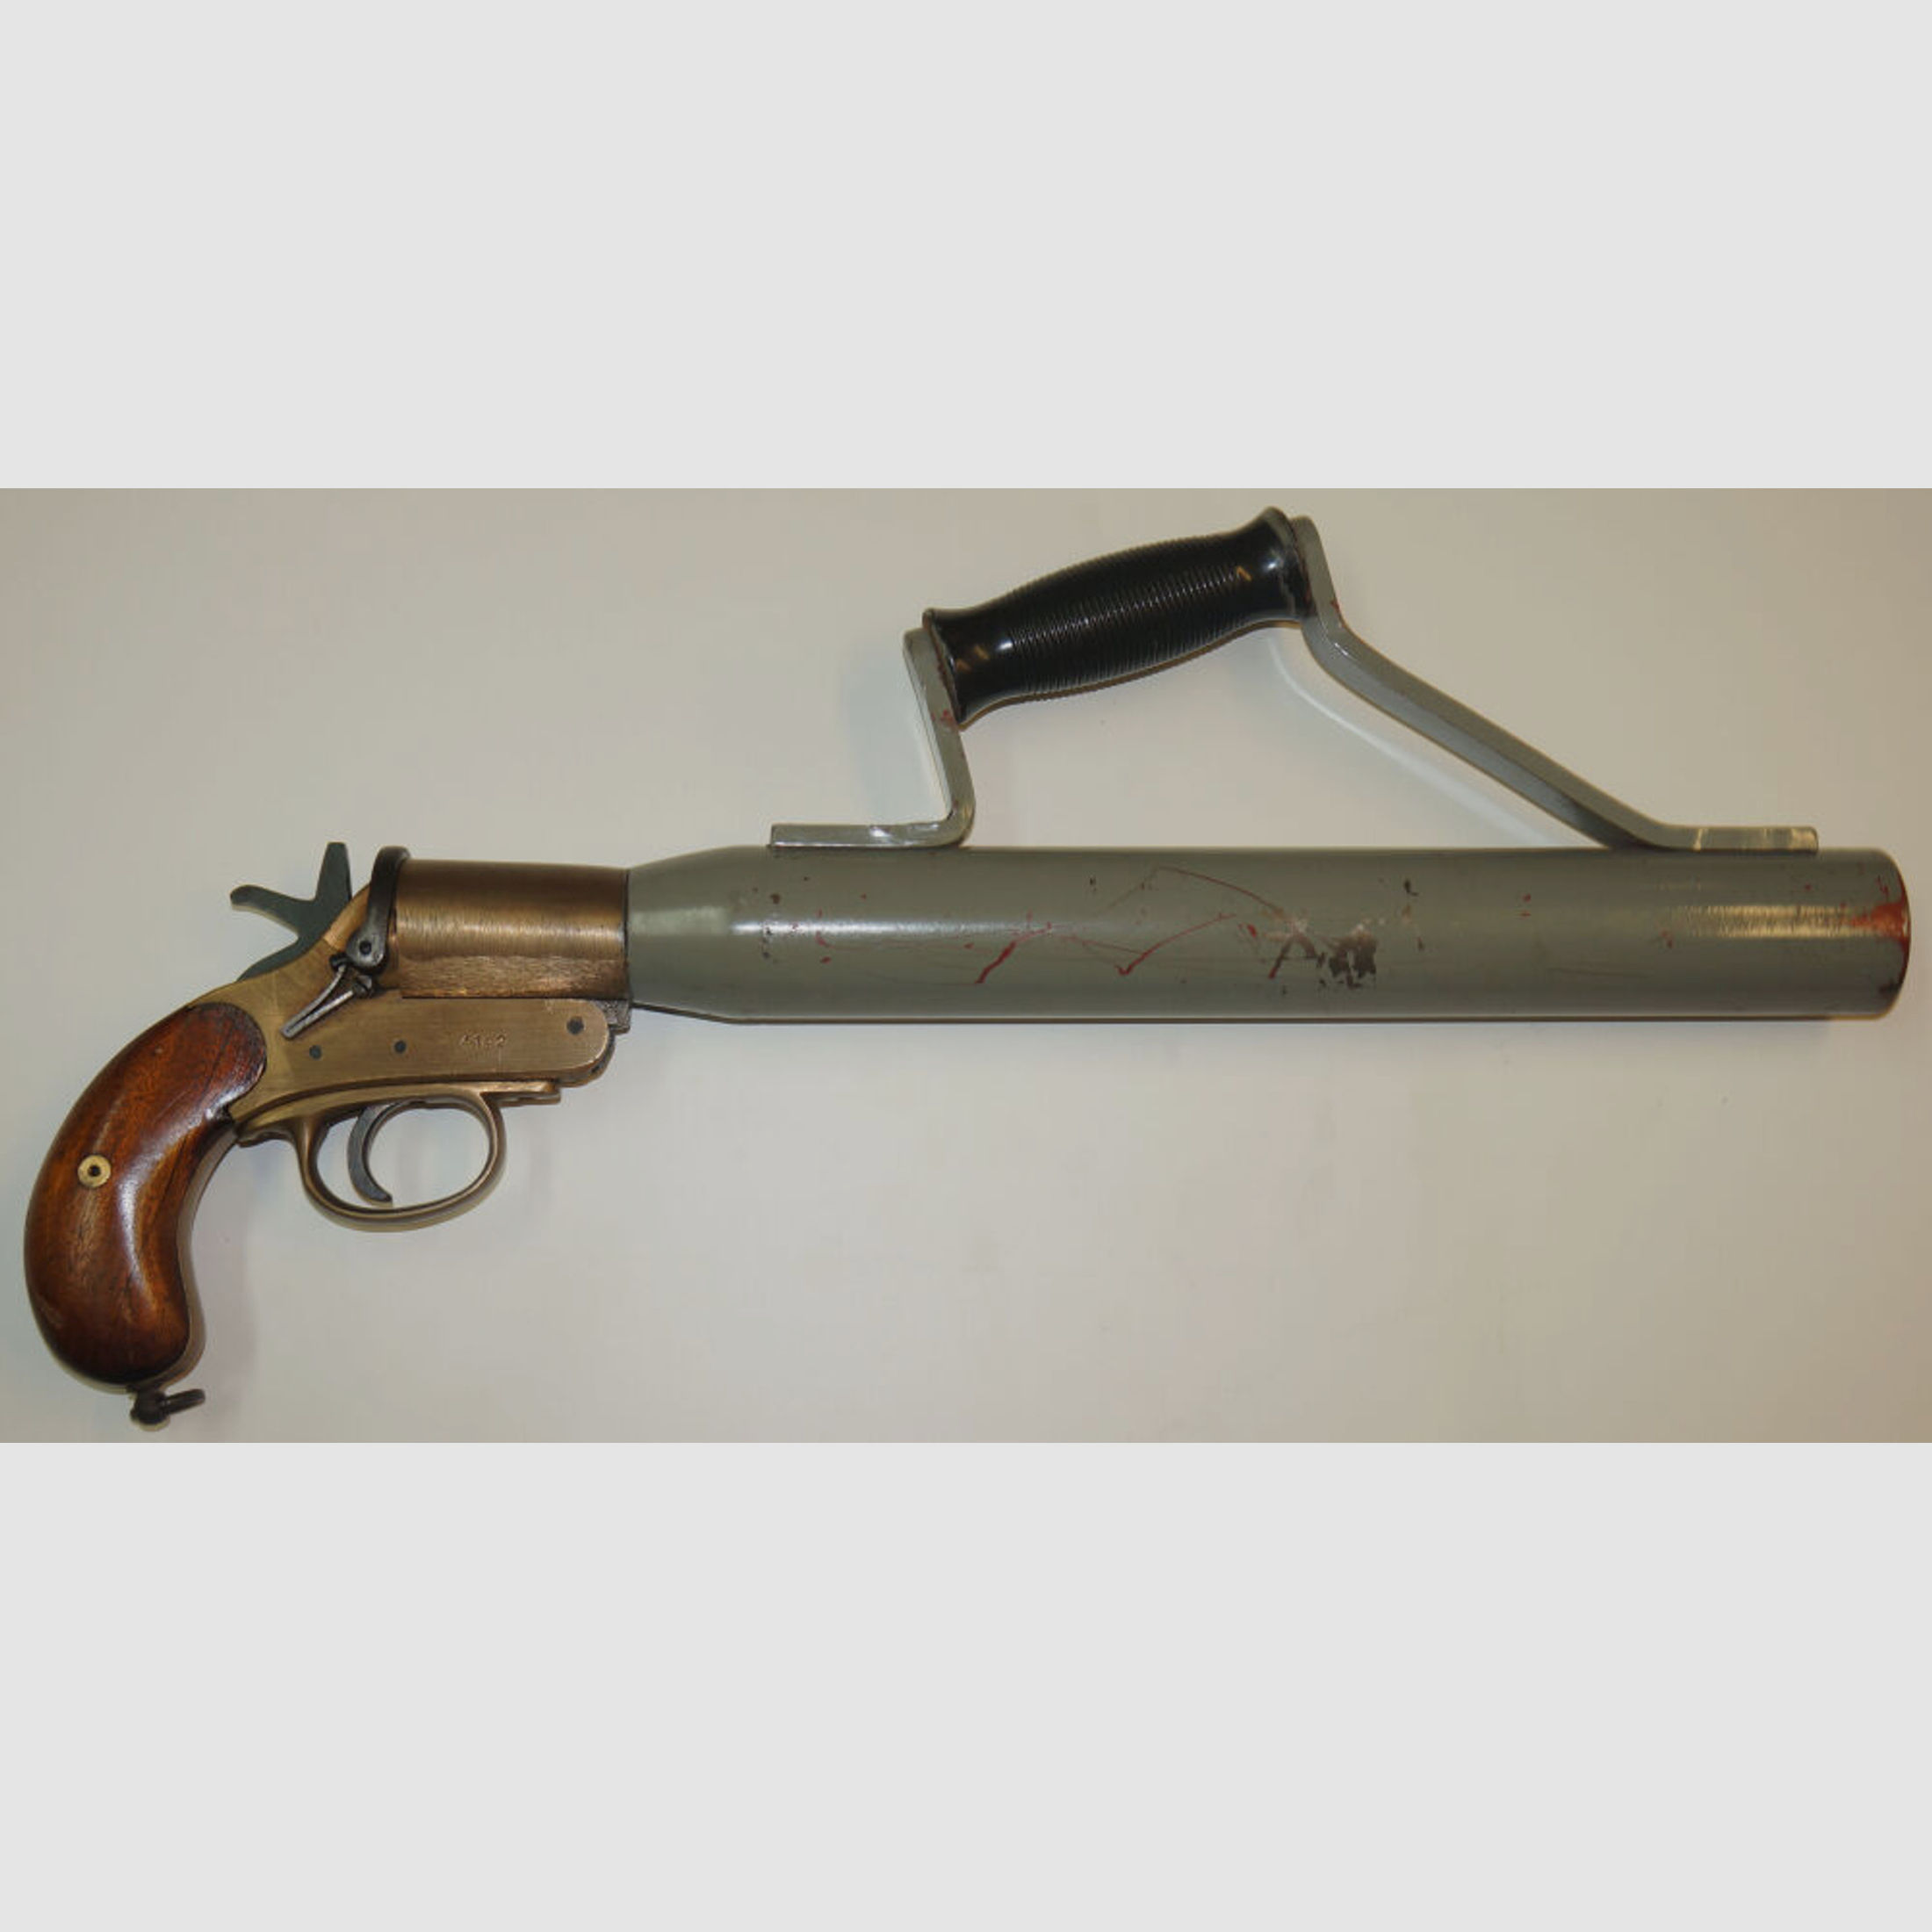 Schermuly Limited	 Rettungsleinenpistole, Schermuly Pistol Rocket Apparatus (SPRA), mit Trage- bzw. Haltegriff